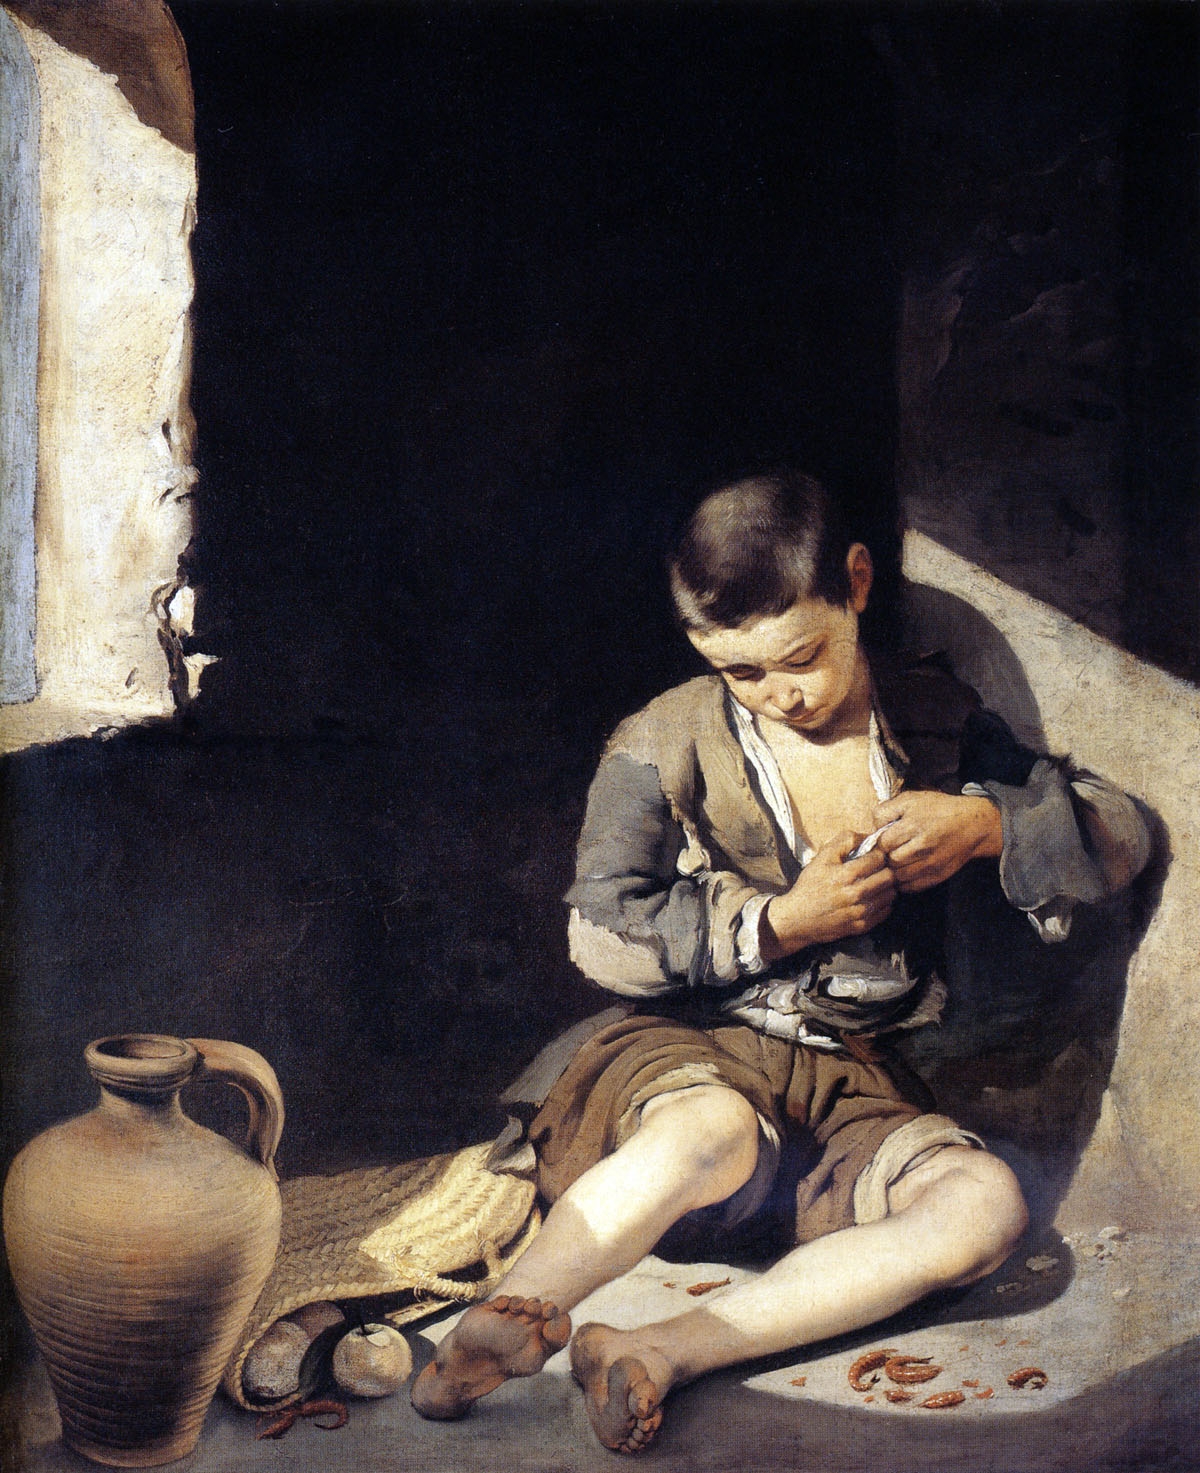 Le jeune mendiant peint par Bartolomé Esteban Murillo